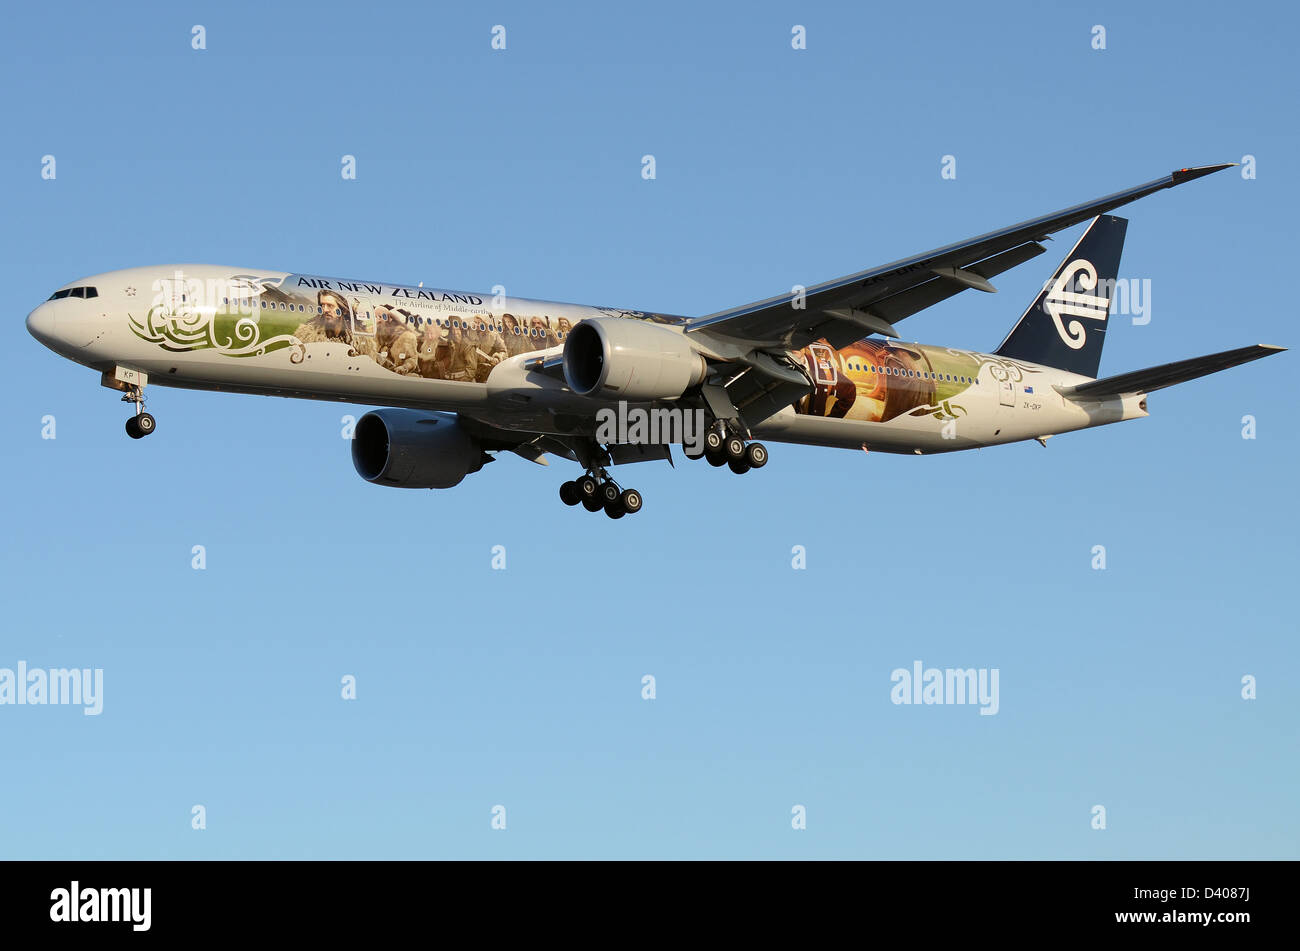 Air New Zealand Boeing 777 airliner Jet plane, seinen ersten Flug mit dem besonderen Der Hobbit Farbschema Förderung der Peter Jackson film Stockfoto